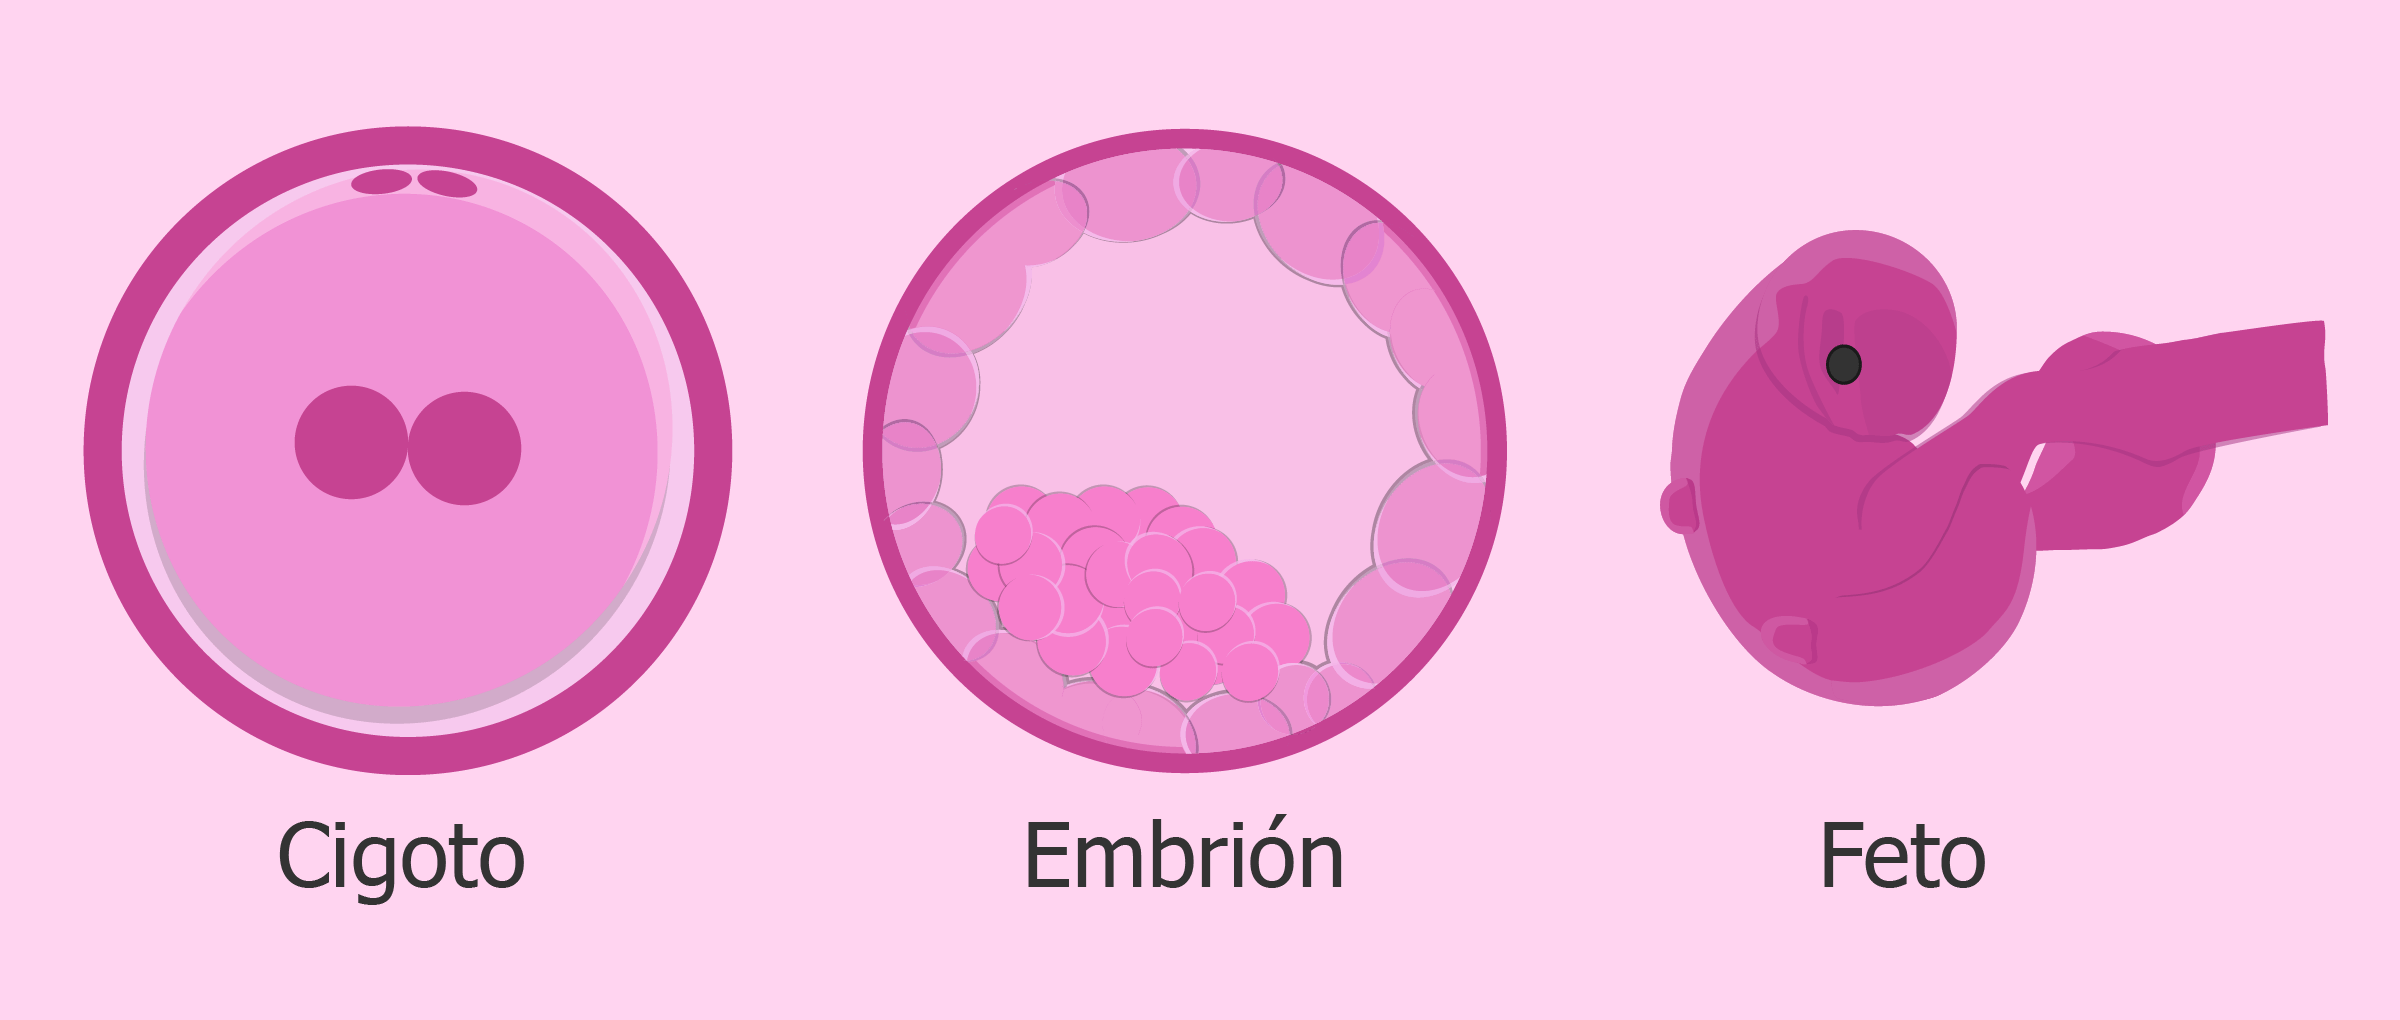 Cigoto, embrión y feto: ¿cuál es la diferencia?